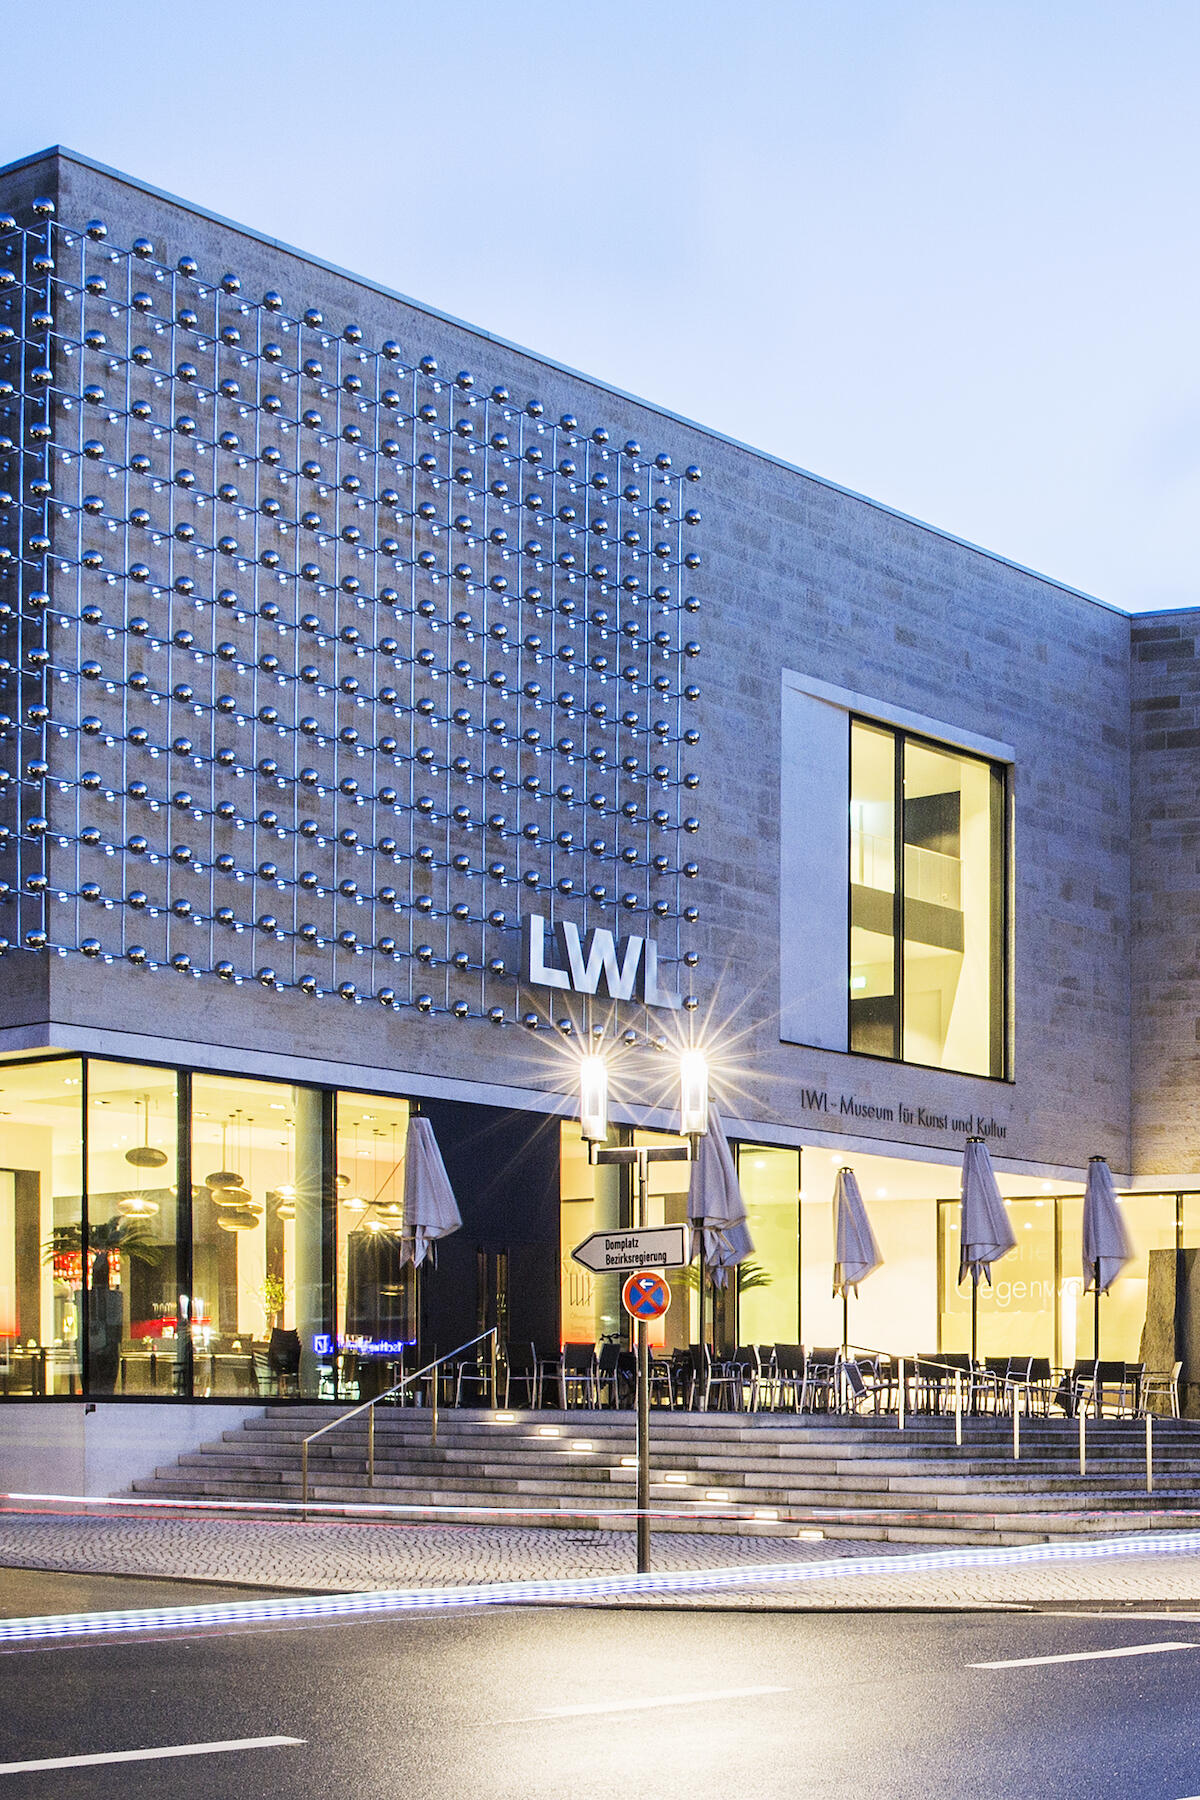 LWL-Museum für Kunst und Kultur